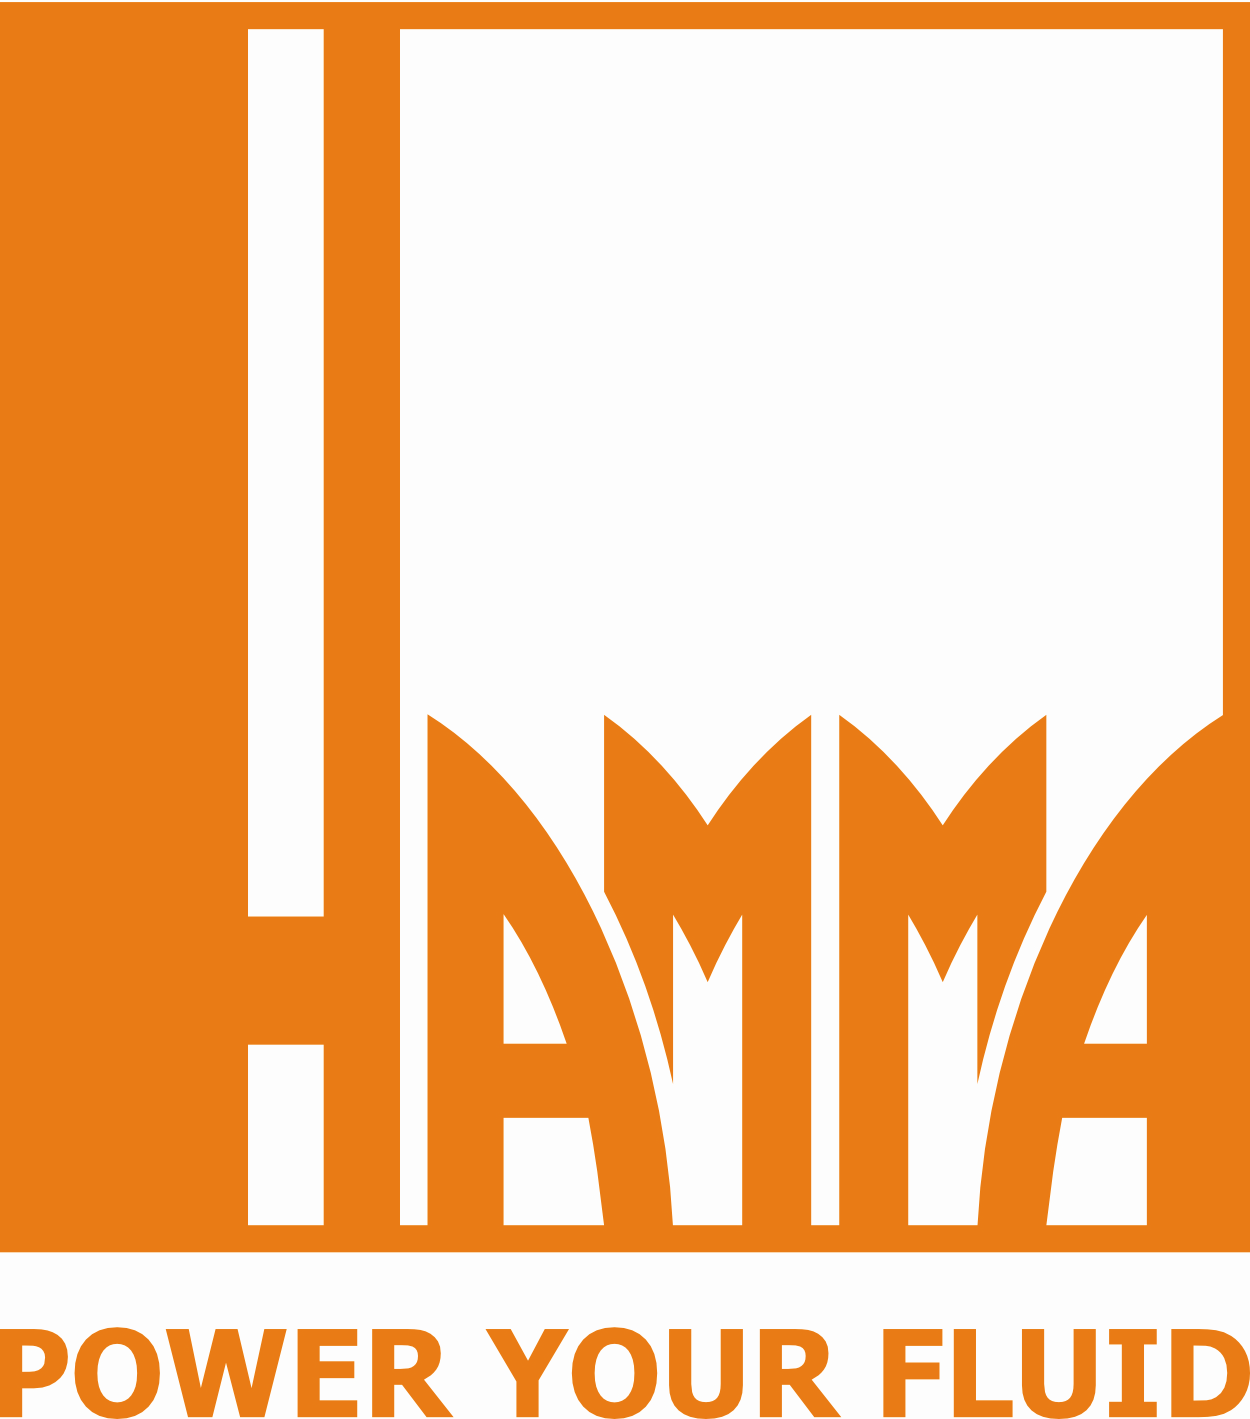 Armin Hamma Umwelttechnik